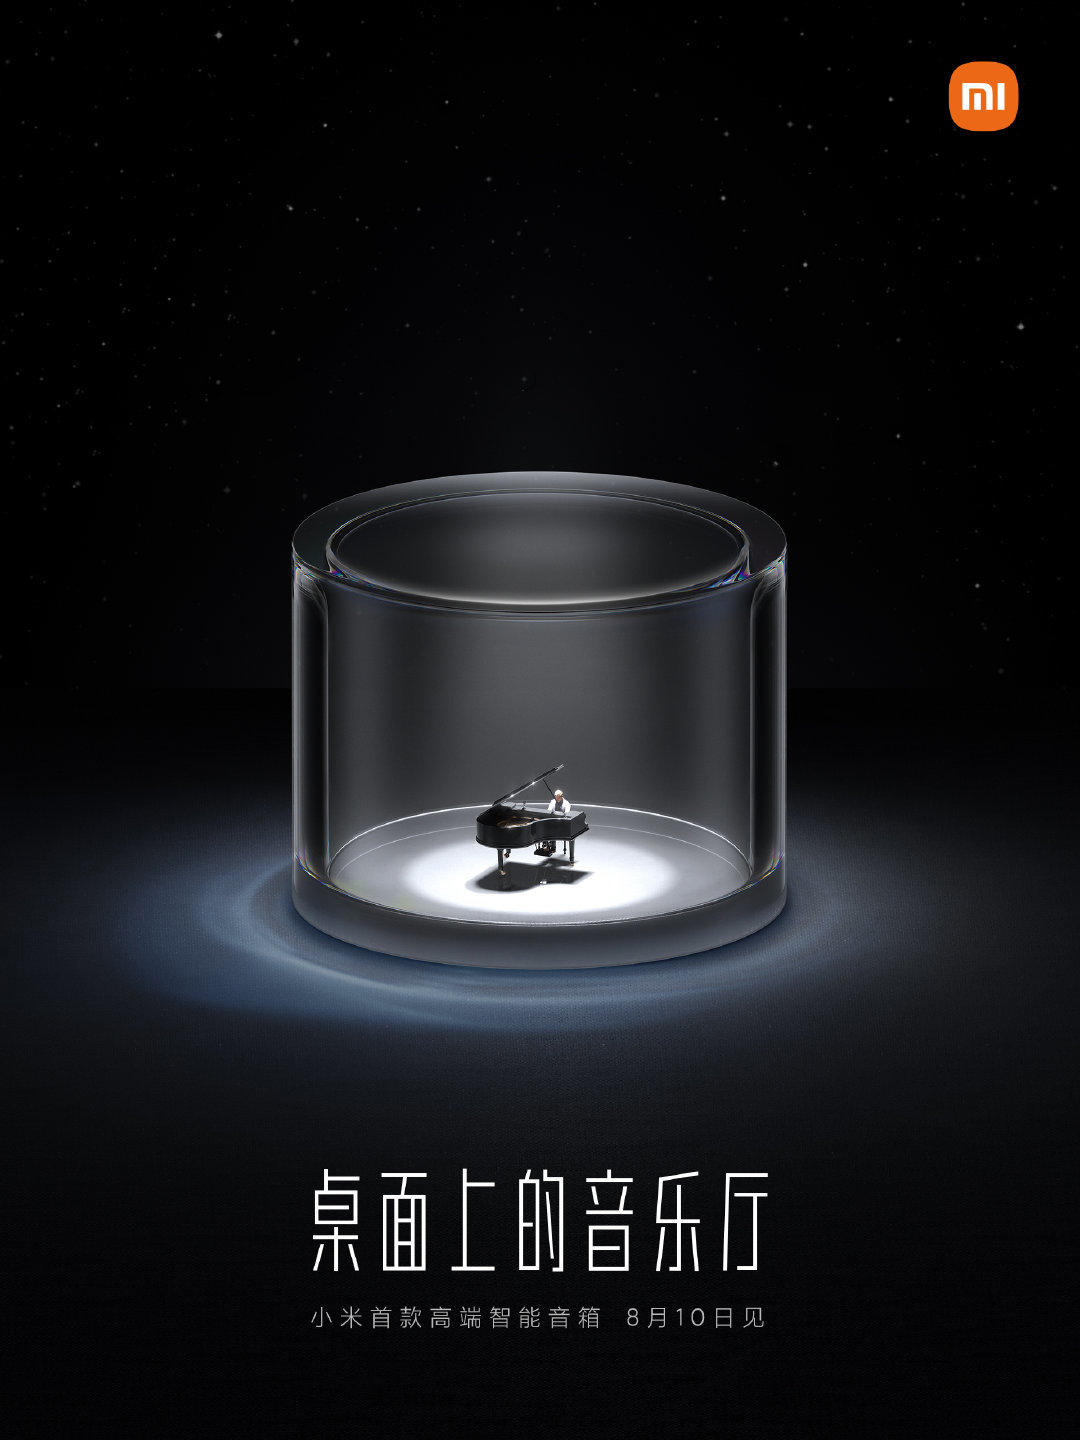 Xiaomi Smart Speaker Teaser